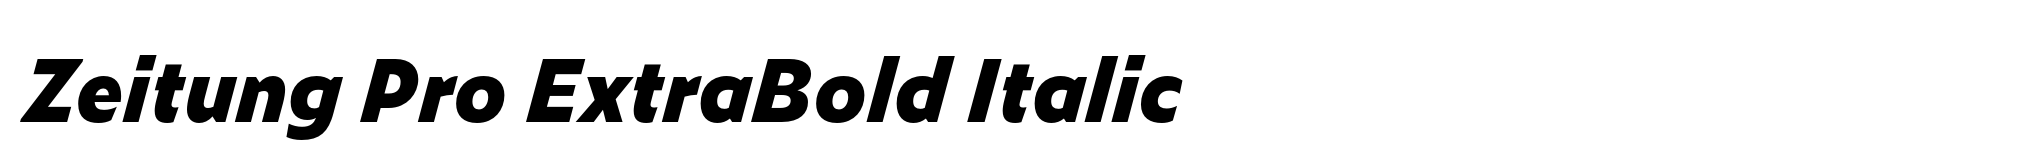 Zeitung Pro ExtraBold Italic image